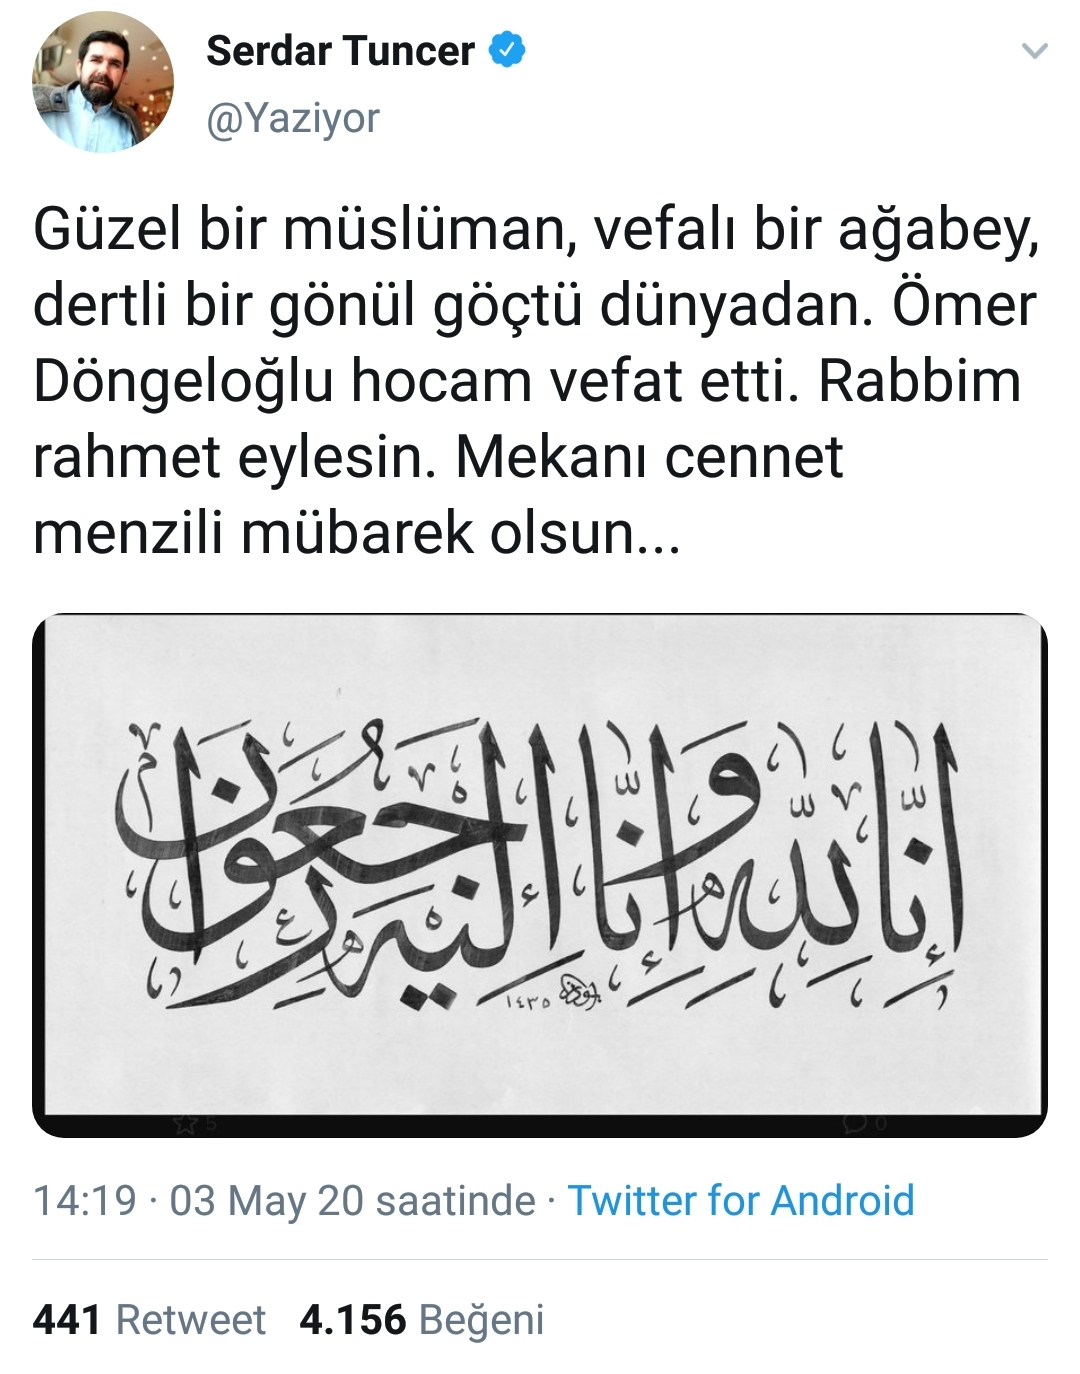 ömer döngeloğlu #2020776 - uludağ sözlük galeri